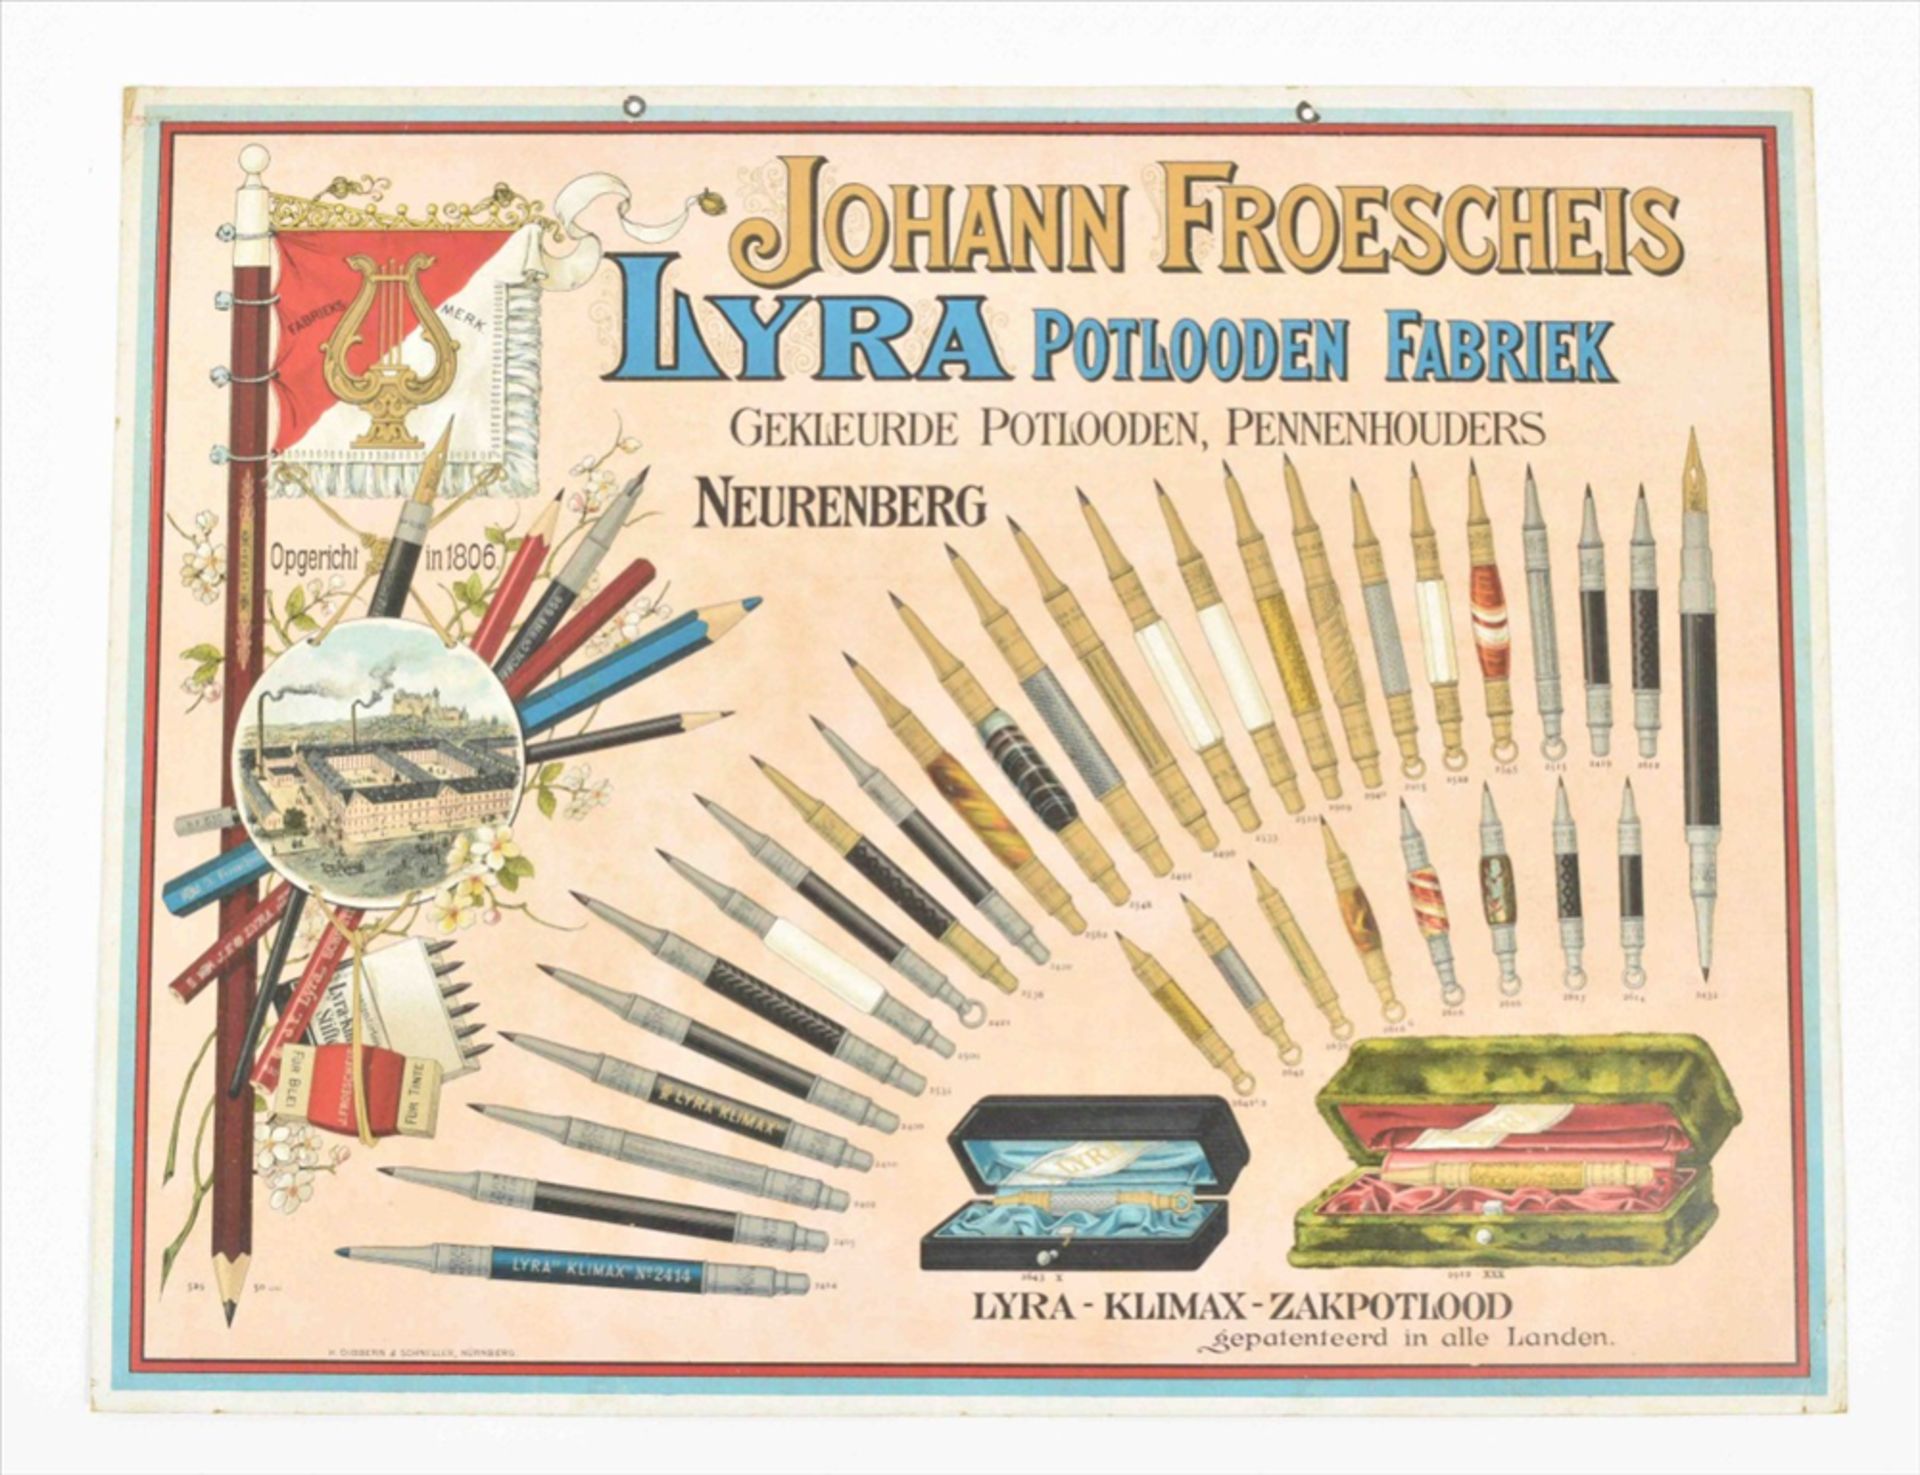 Six posters: (1) "Johann Froescheis Lyra Potlooden Fabriek - Bild 6 aus 6